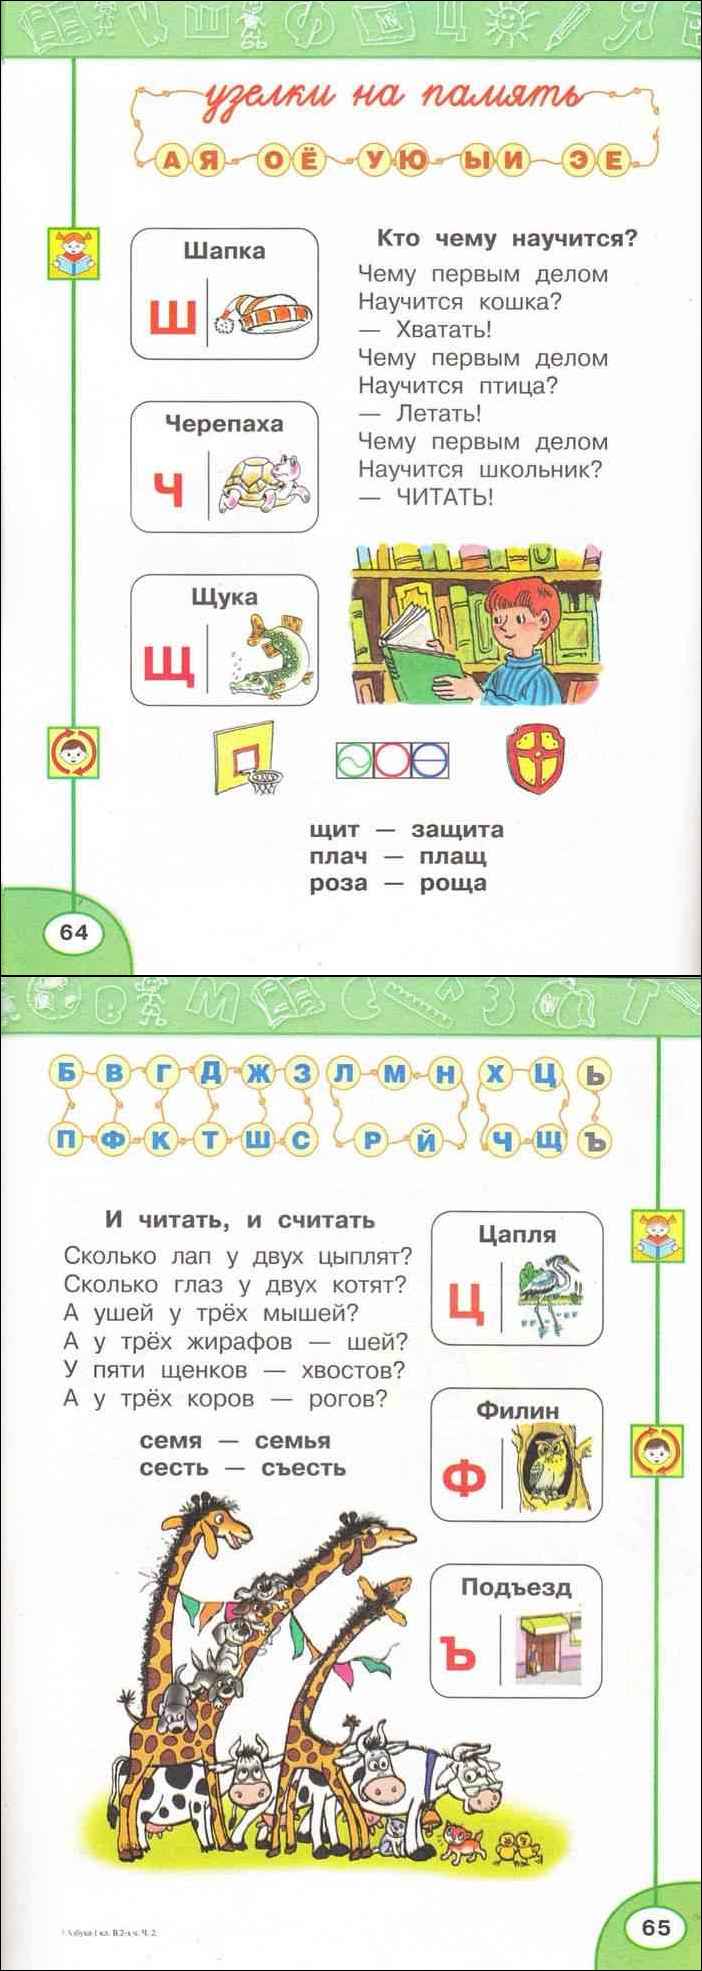 Русский язык климанова макеева ответы. Азбука 1 класс 2 часть Климанова Макеева.